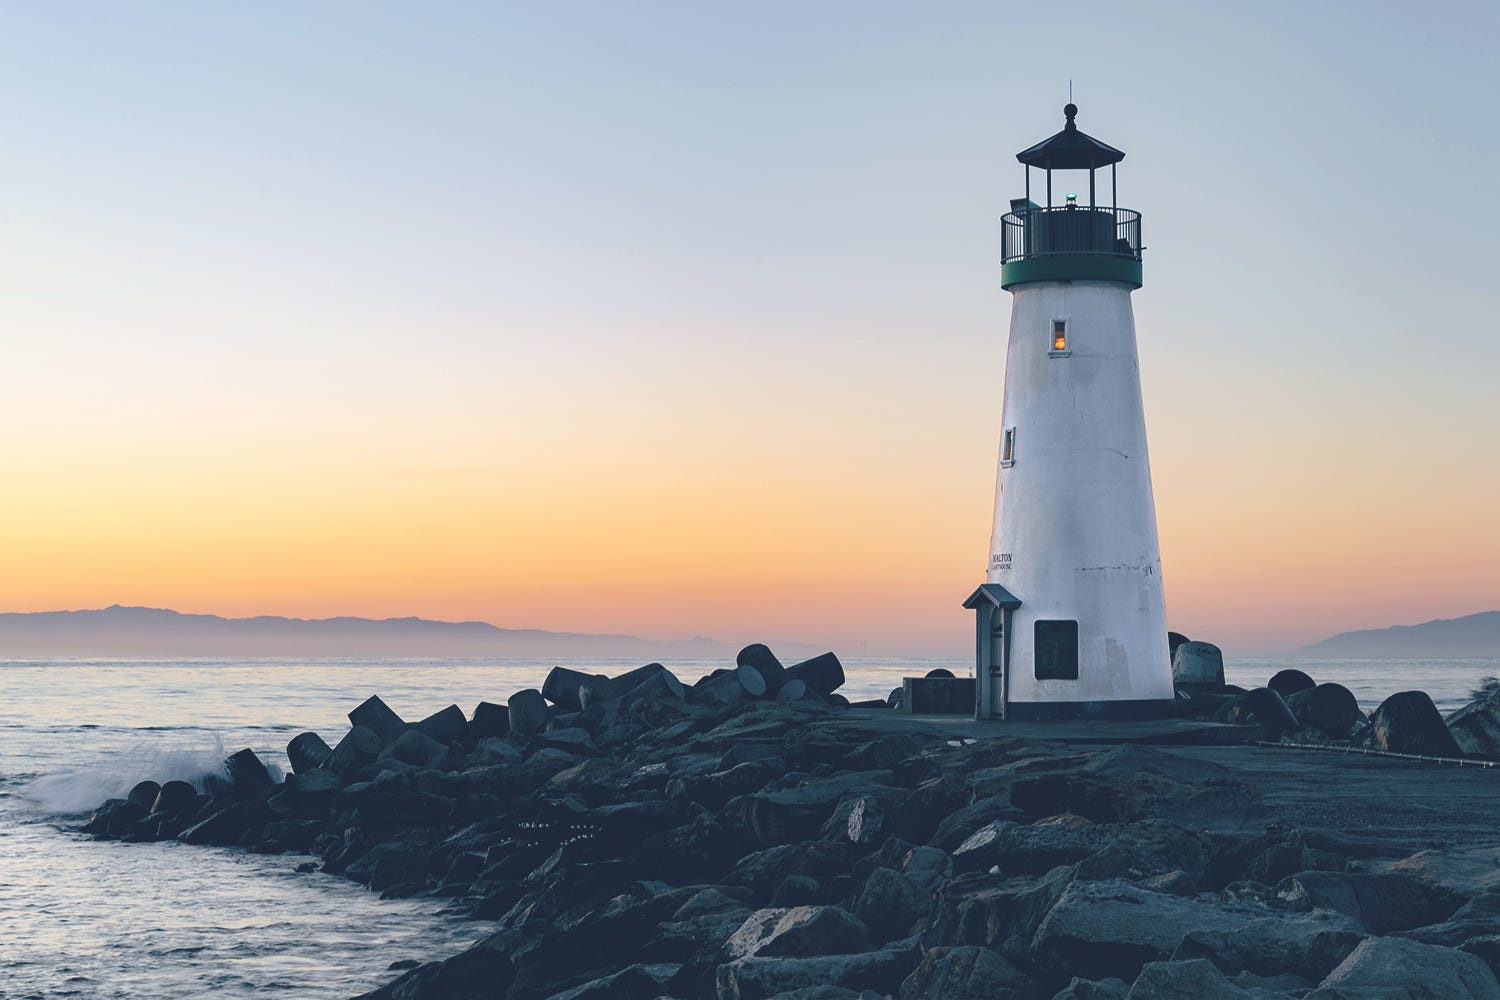 Lighthouse on shoreline at dusk